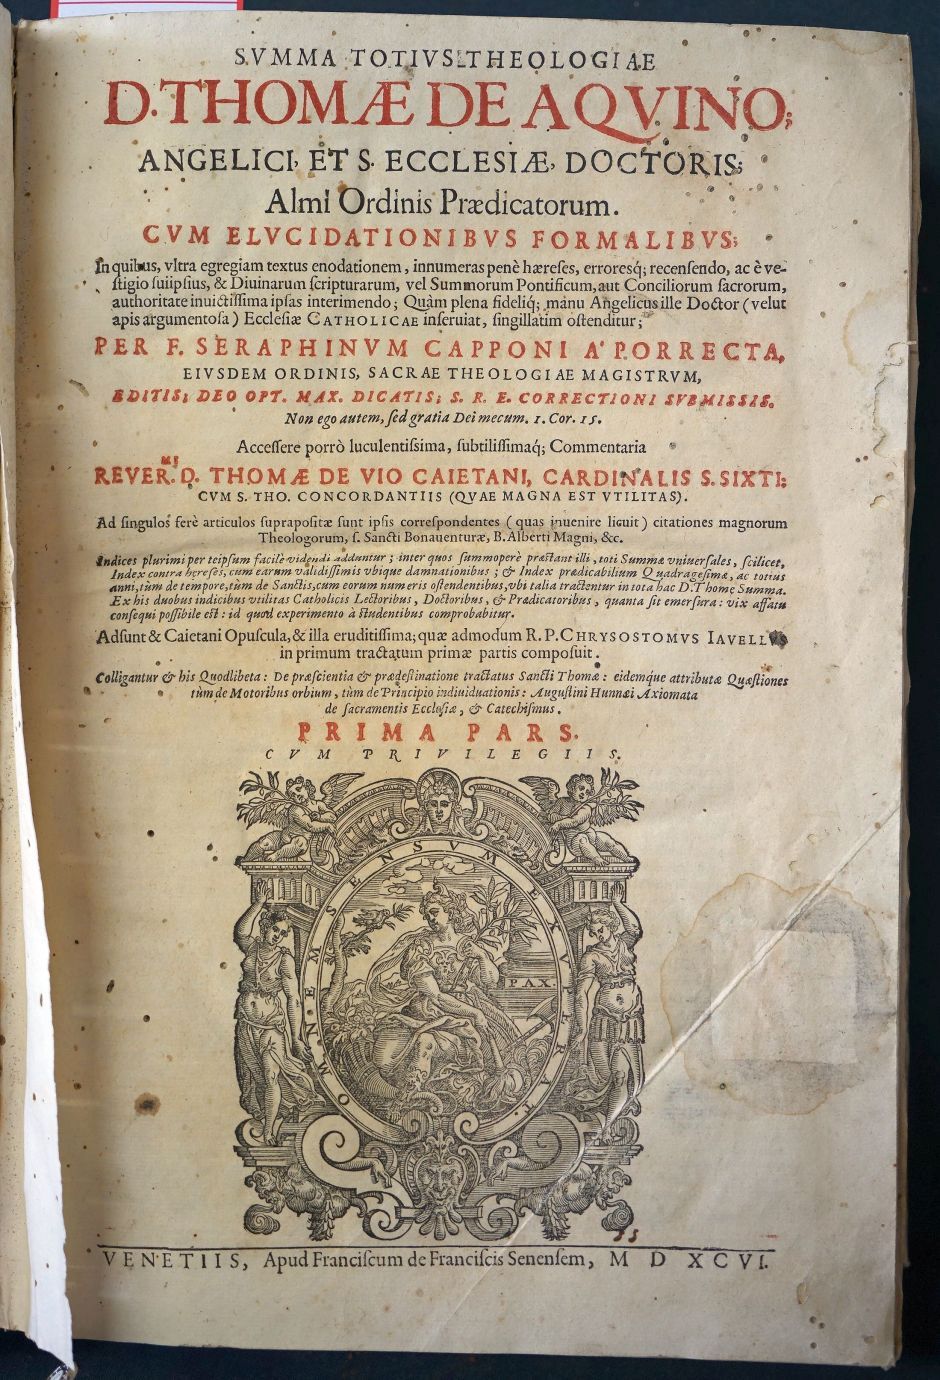 Lot 1207, Auction  115, Thomas von Aquin, Summa totius theologiae